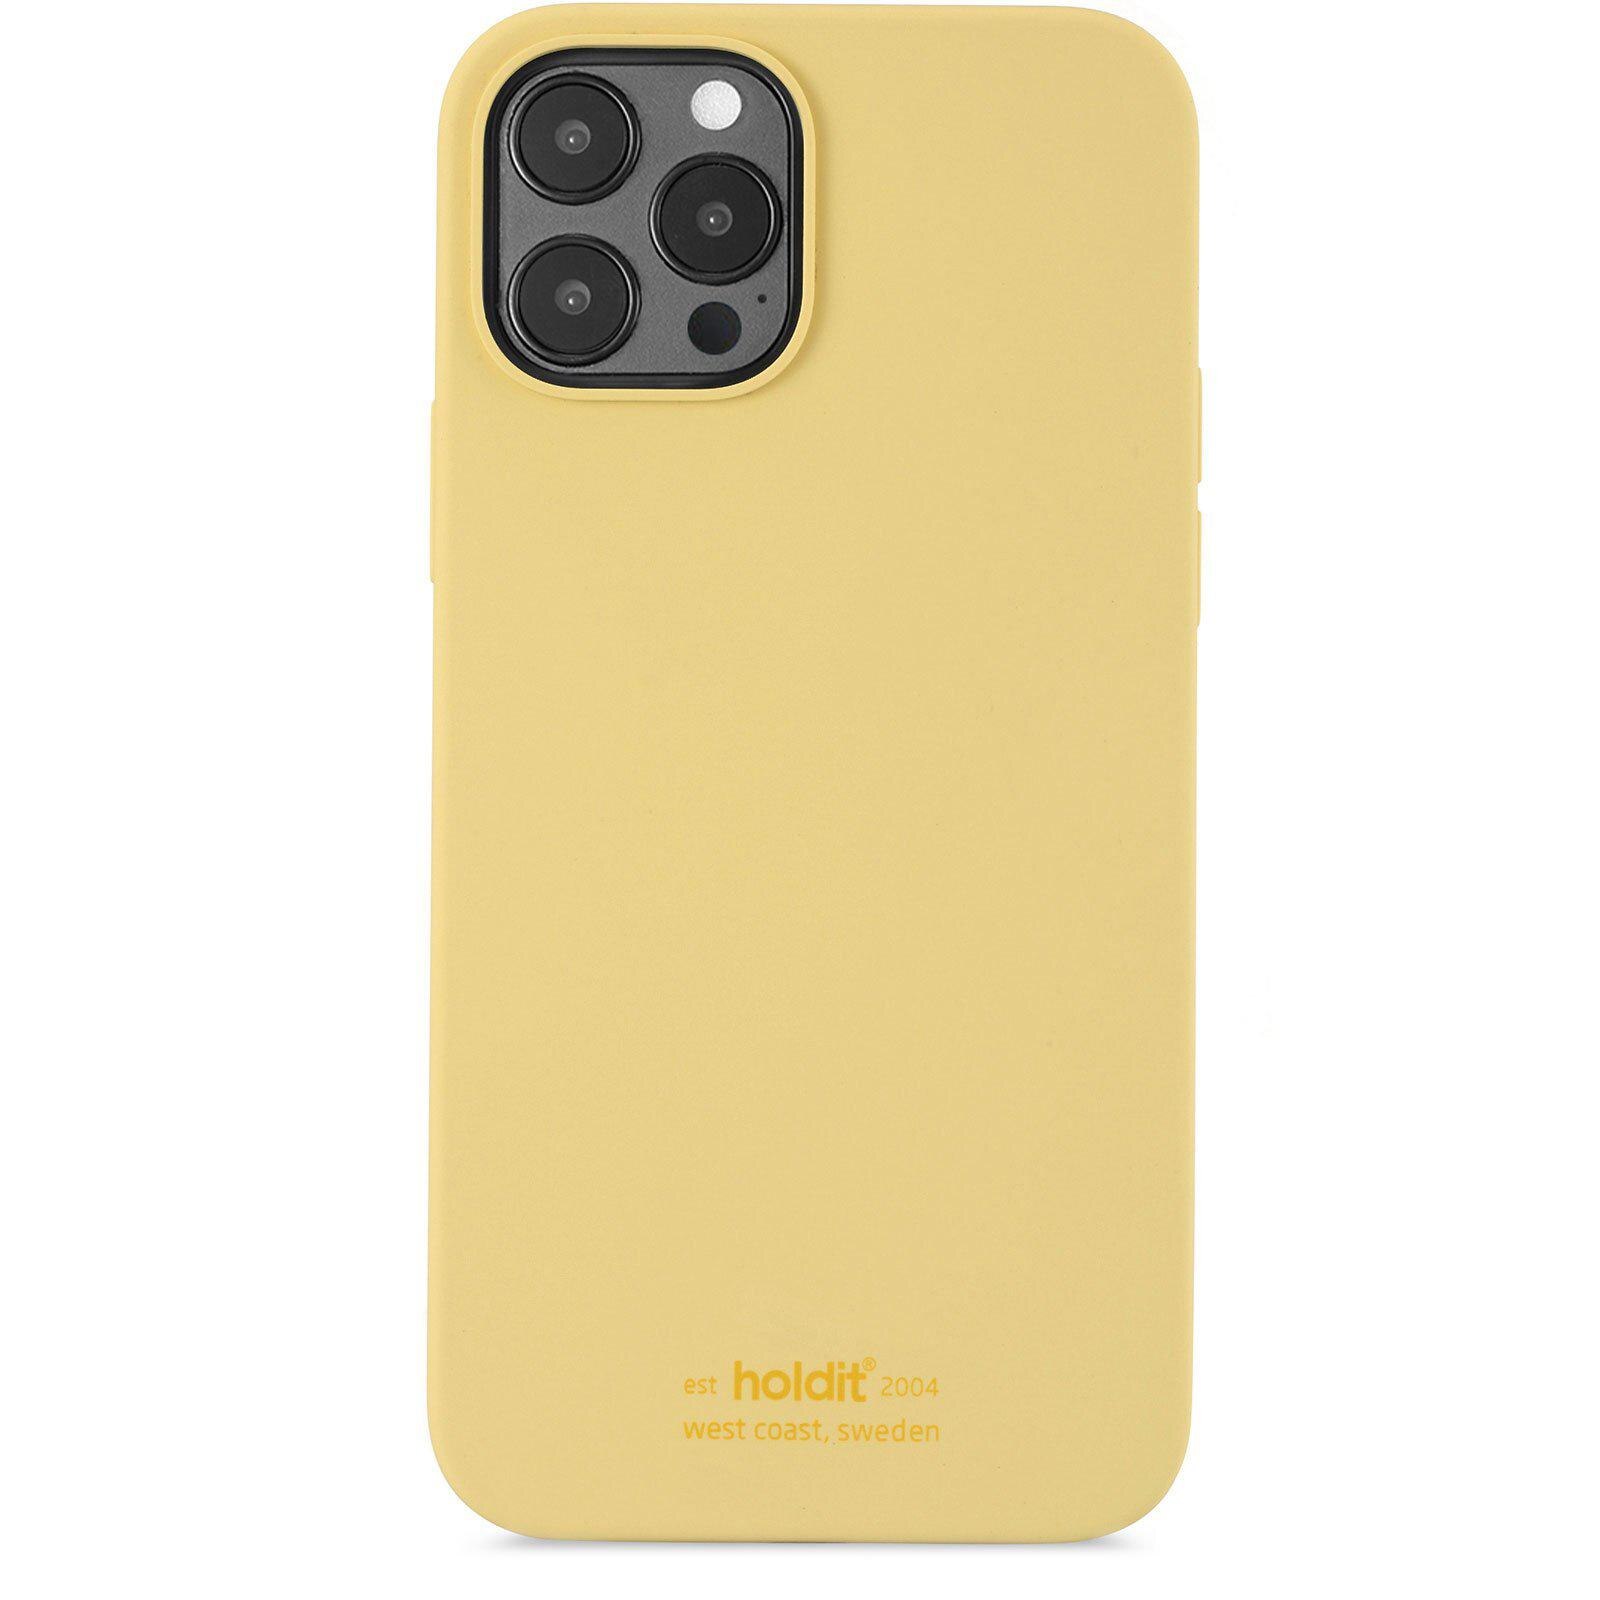 Silikonhülle iPhone 12 Pro Max Yellow